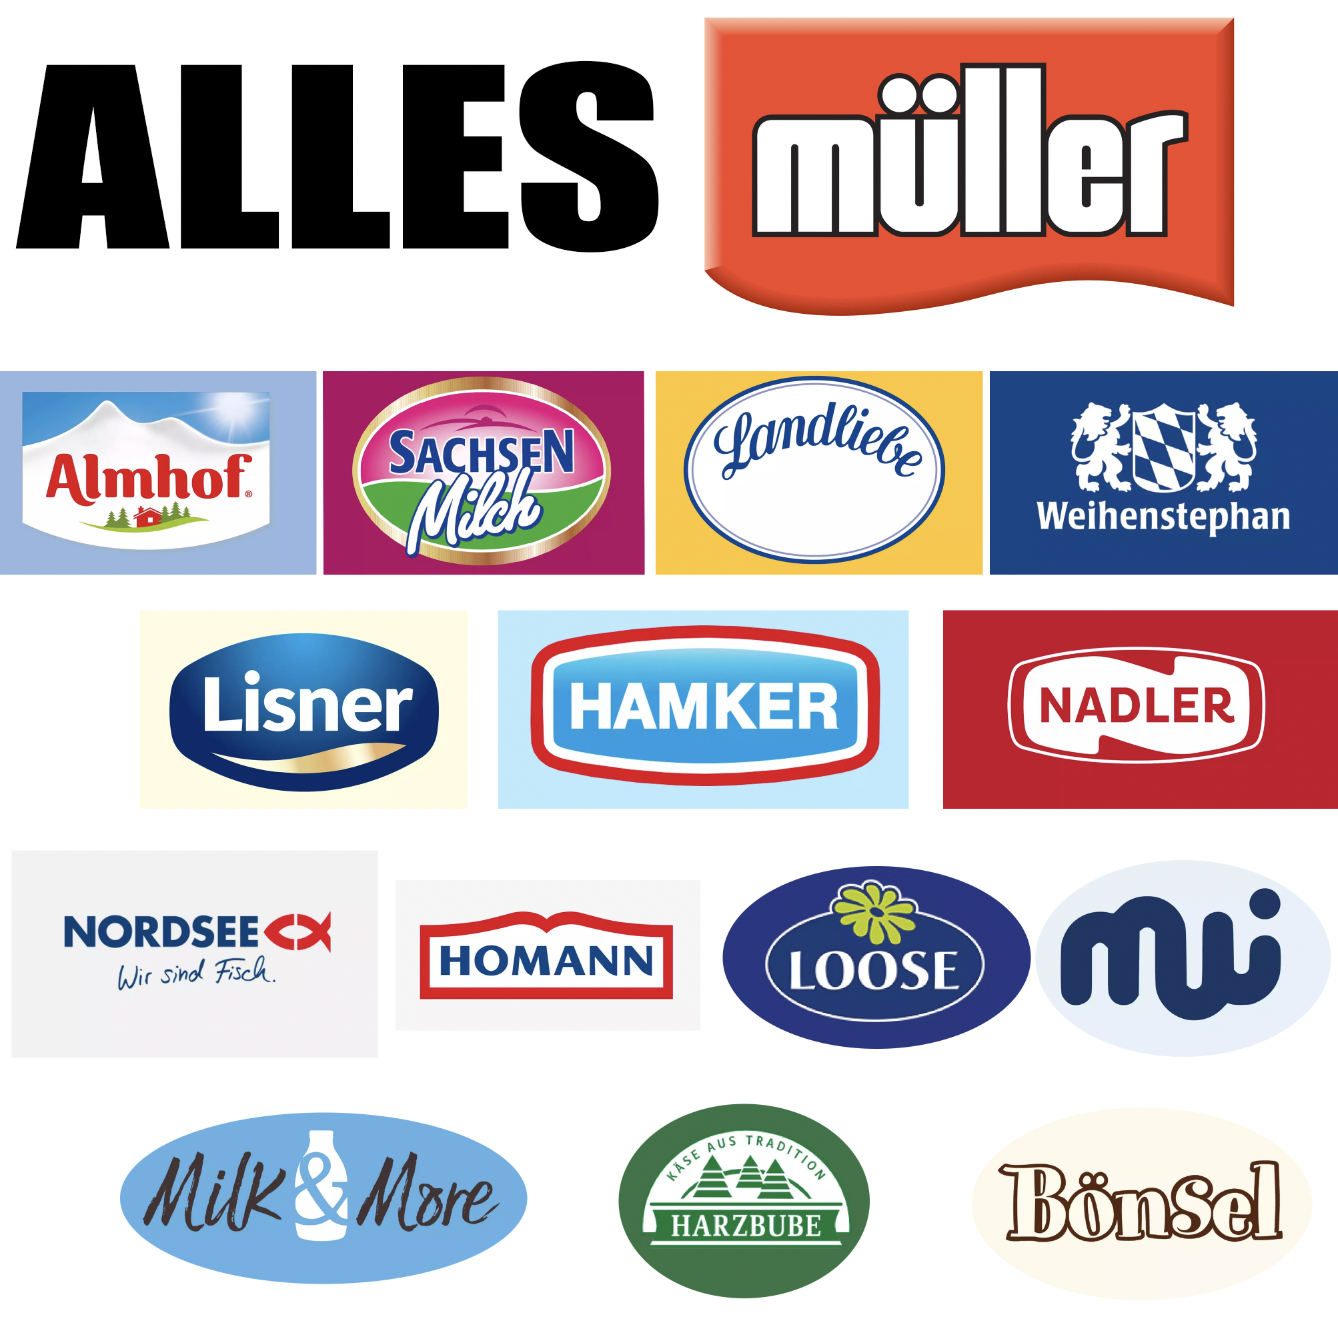 Eine Collage mit Markennamen:<br>Müller<br>Almhof<br>SachsenMilch<br>Landliebe<br>Weihenstephan<br>Lisner<br>Hamker<br>Nadler<br>Nordsee<br>Homann<br>Loose<br>MWI<br>Milk& Morde<br>Harzbube<br>Bönsel